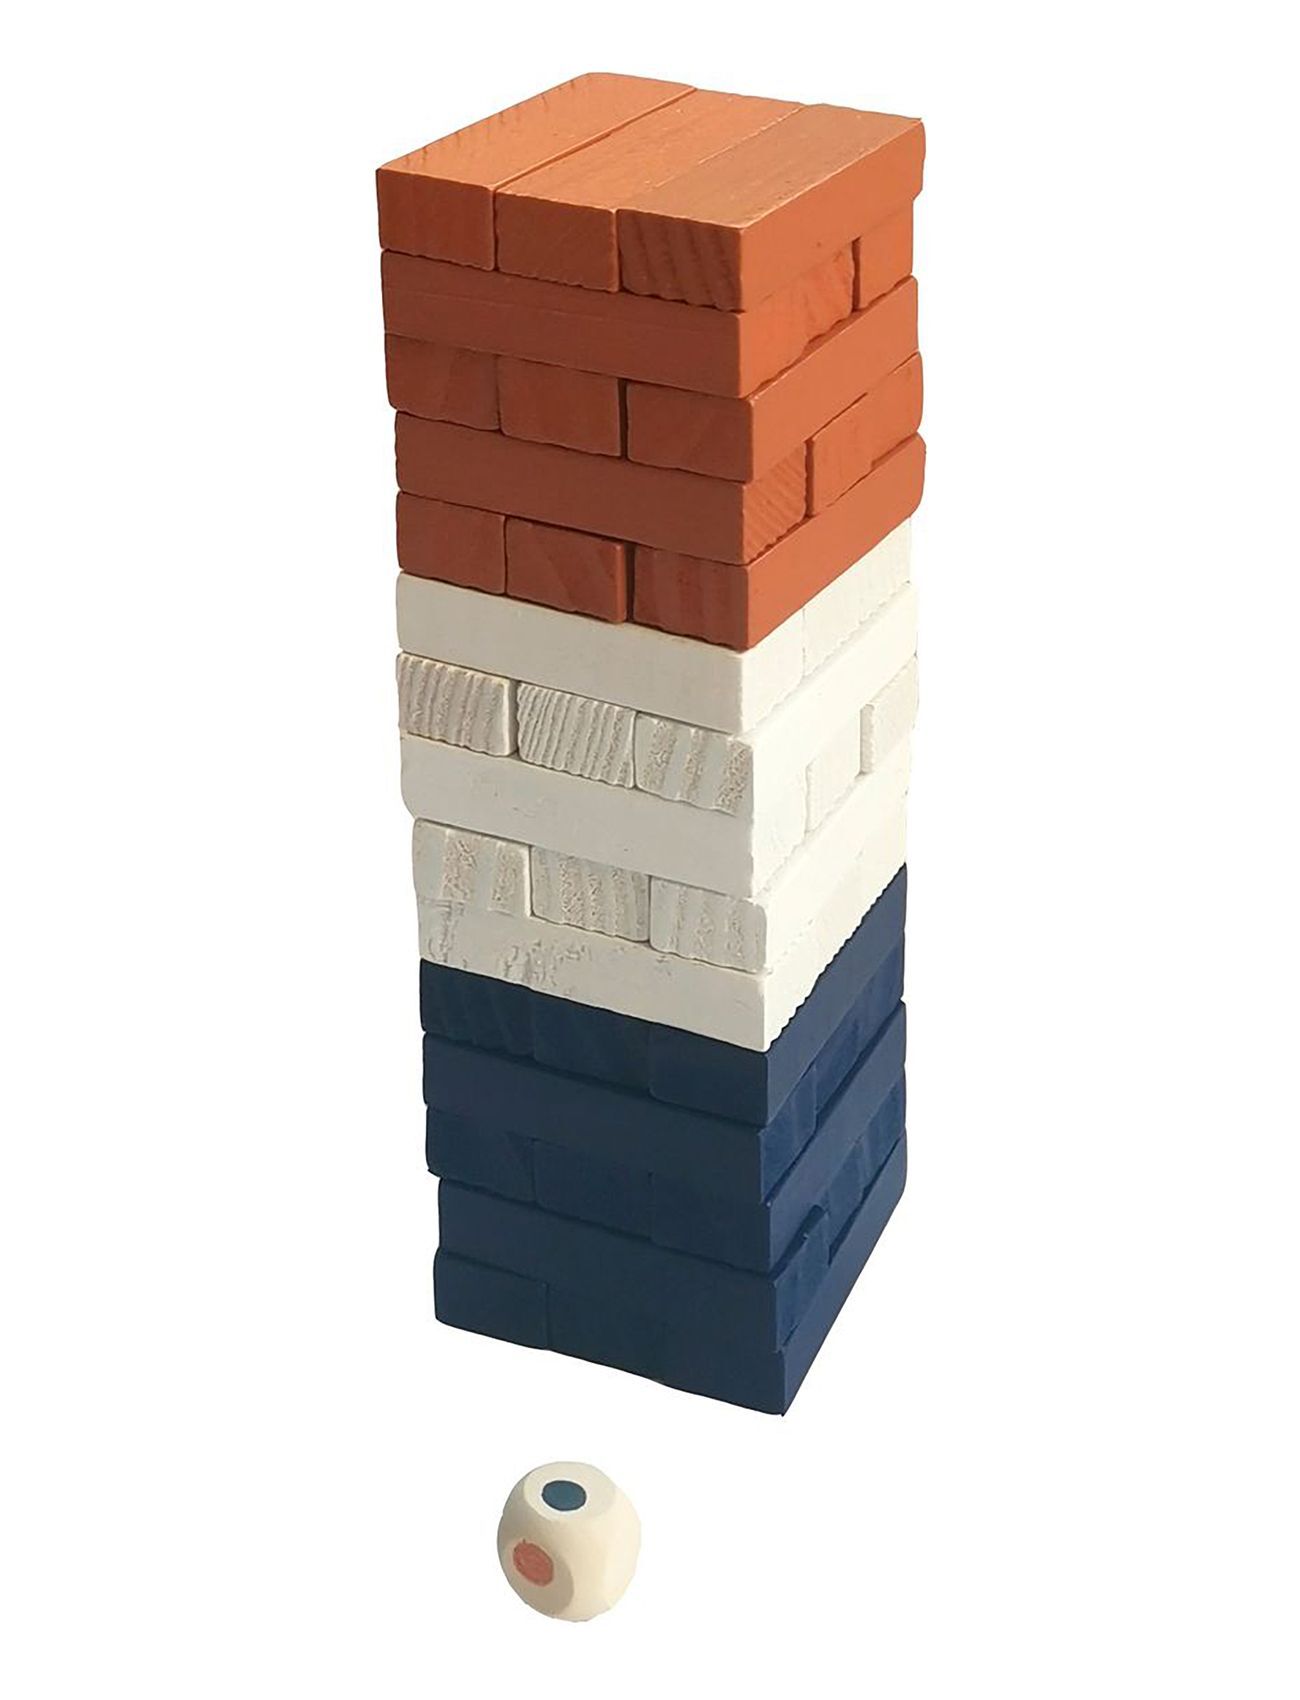 Magni Toys Tumbling Tower, Small Toys Building Sets & Blocks Building Blocks Multi/mønstret Magni Toys